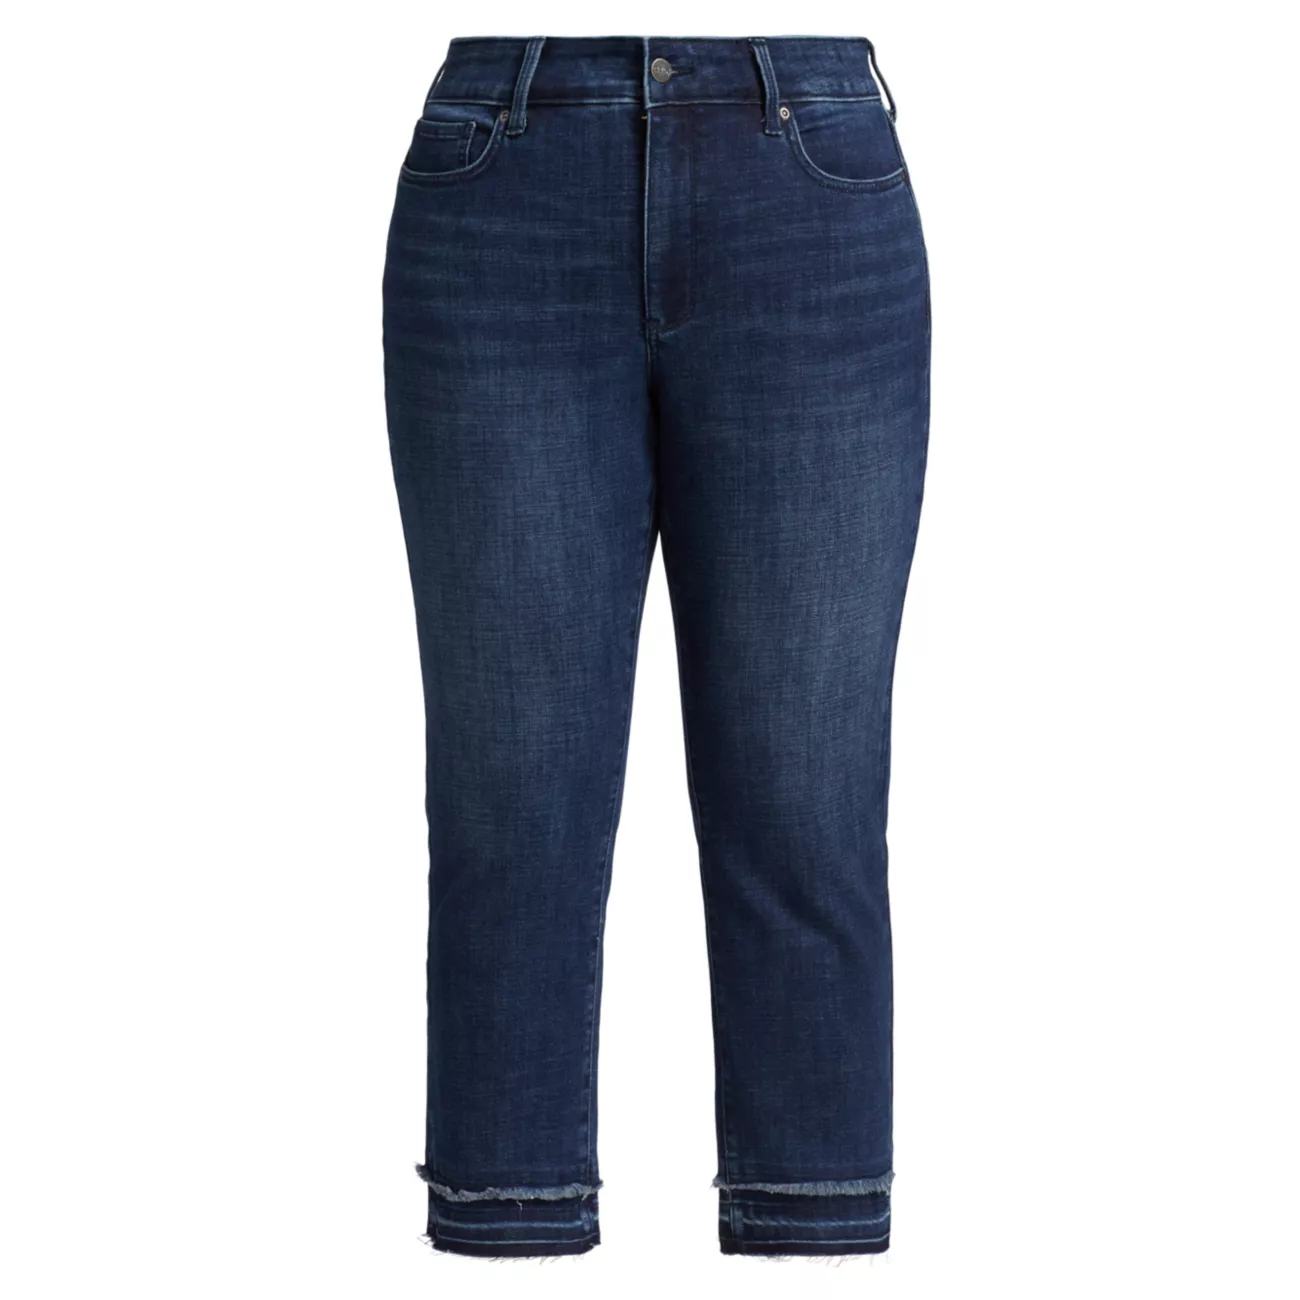 Прямые джинсы Marilyn с высокой посадкой и бахромой NYDJ